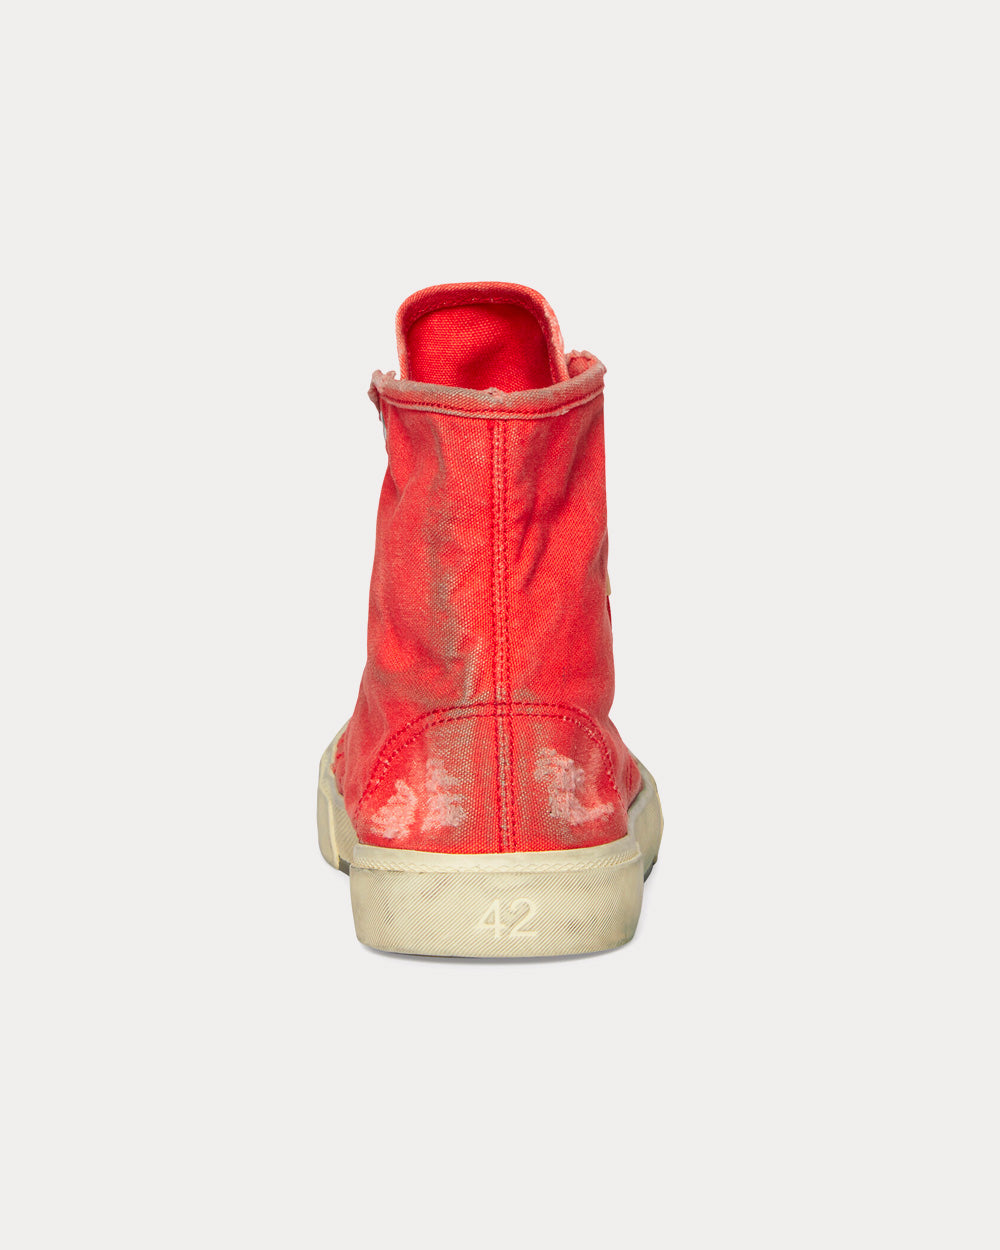 Balenciaga - Paris Red High Top Sneakers